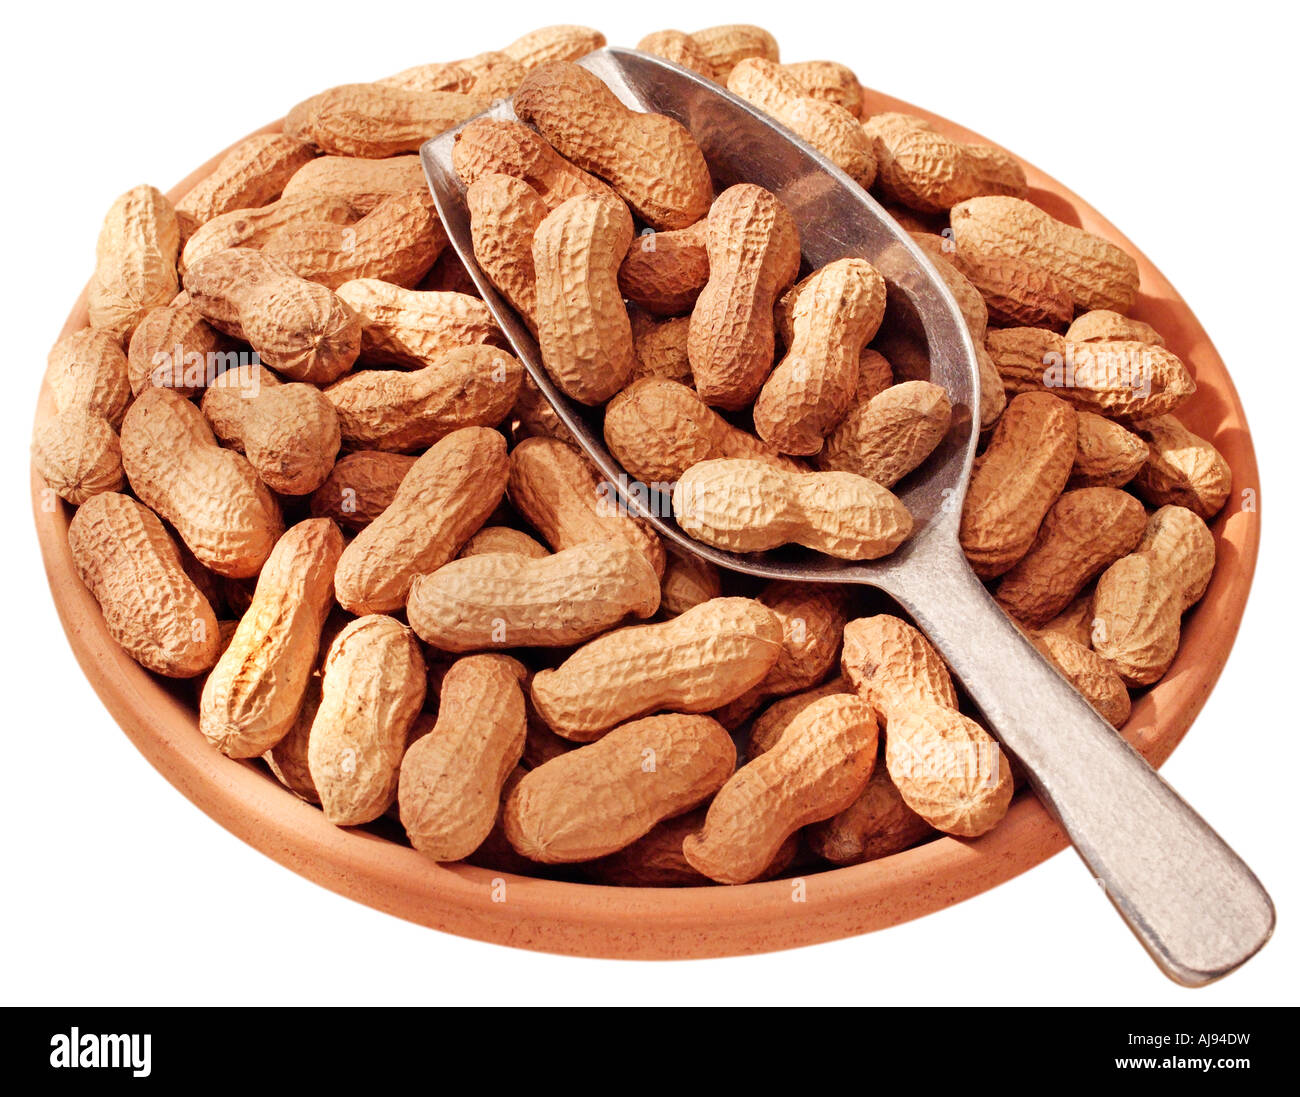 WHOLE MONKEY NUTS Stock Photo